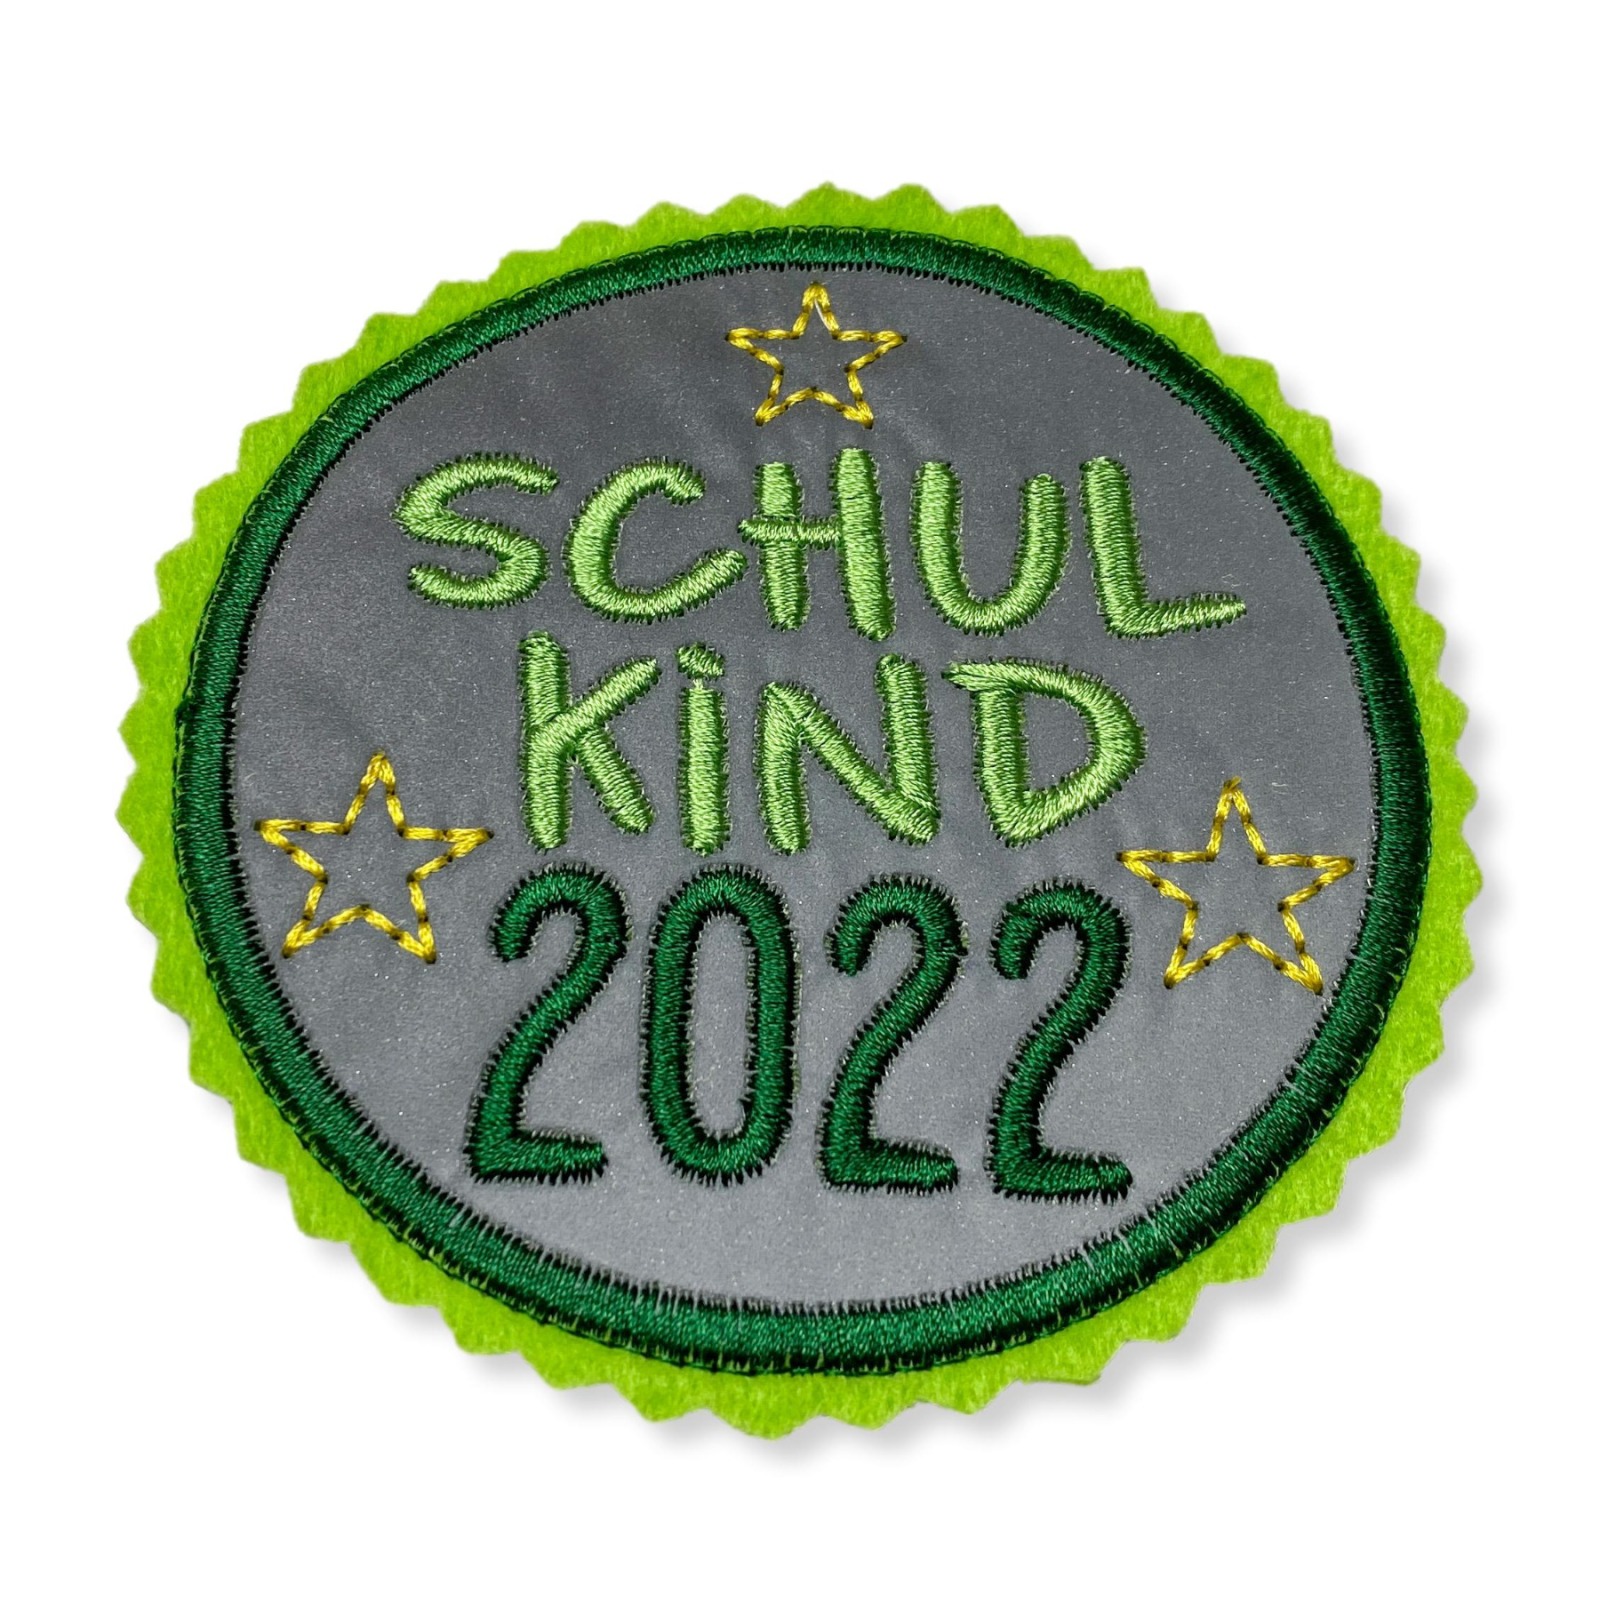 Kletti Schulkind 2022 10cm Durchmesser Reflektorstoff hellgrün dunkelgrün Einschulung Schulmappe 2